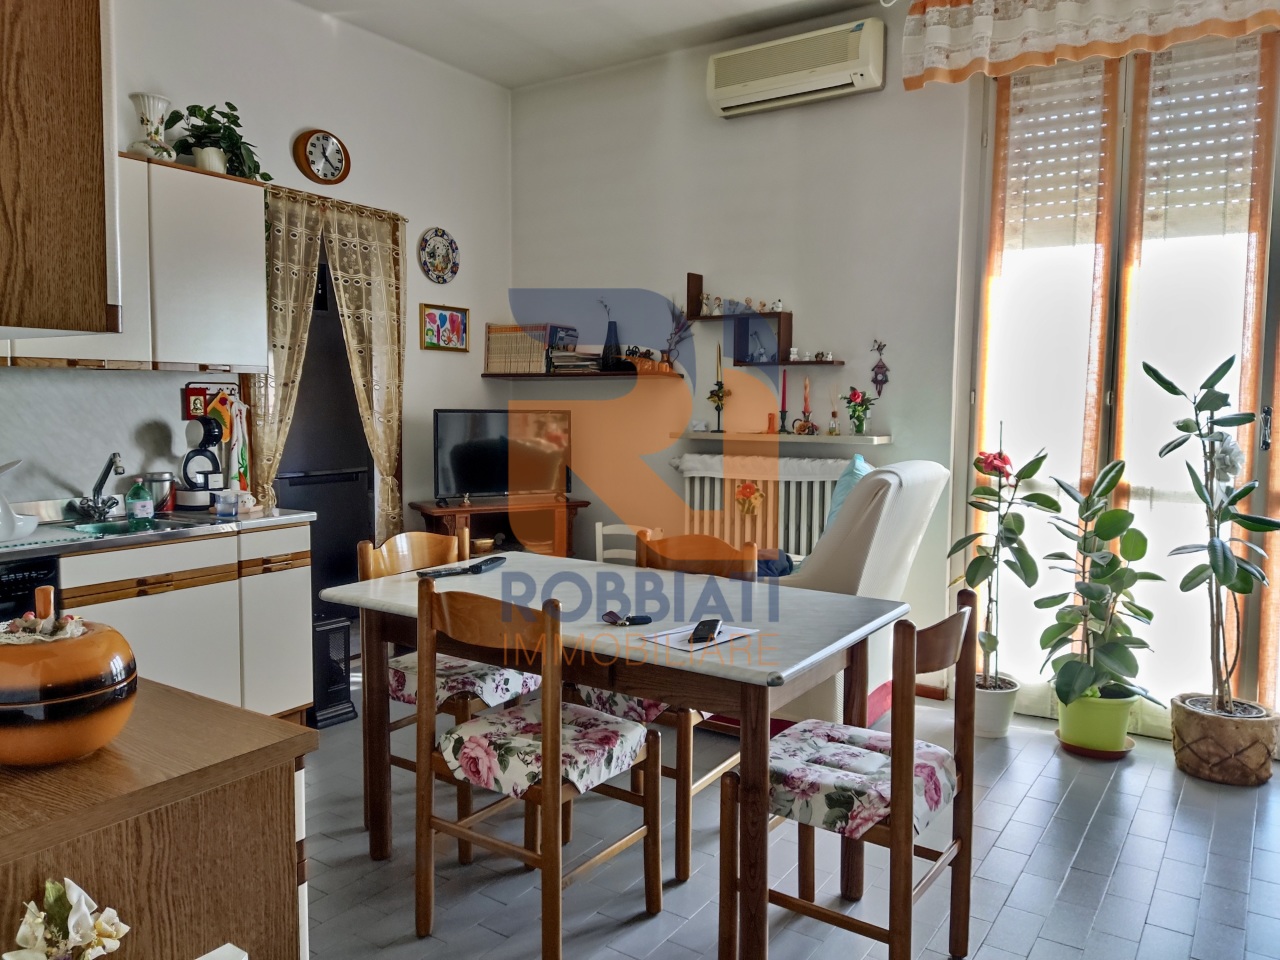 Appartamento in vendita a Bressana Bottarone, 3 locali, prezzo € 75.000 | PortaleAgenzieImmobiliari.it